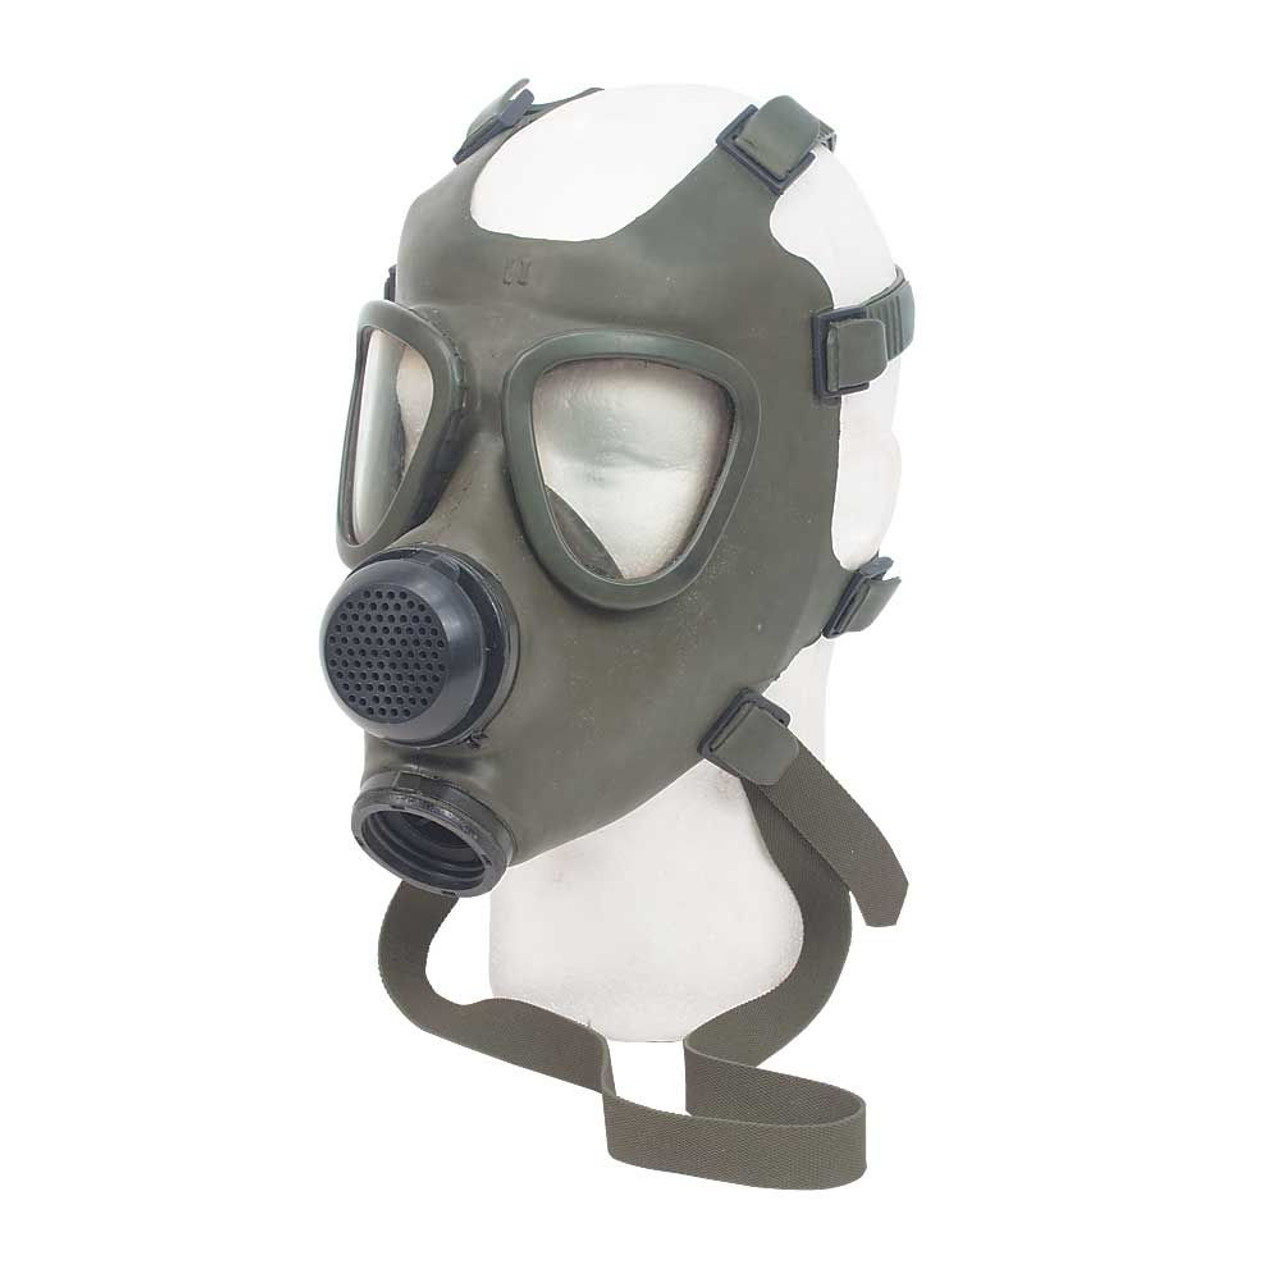 m50 gas mask